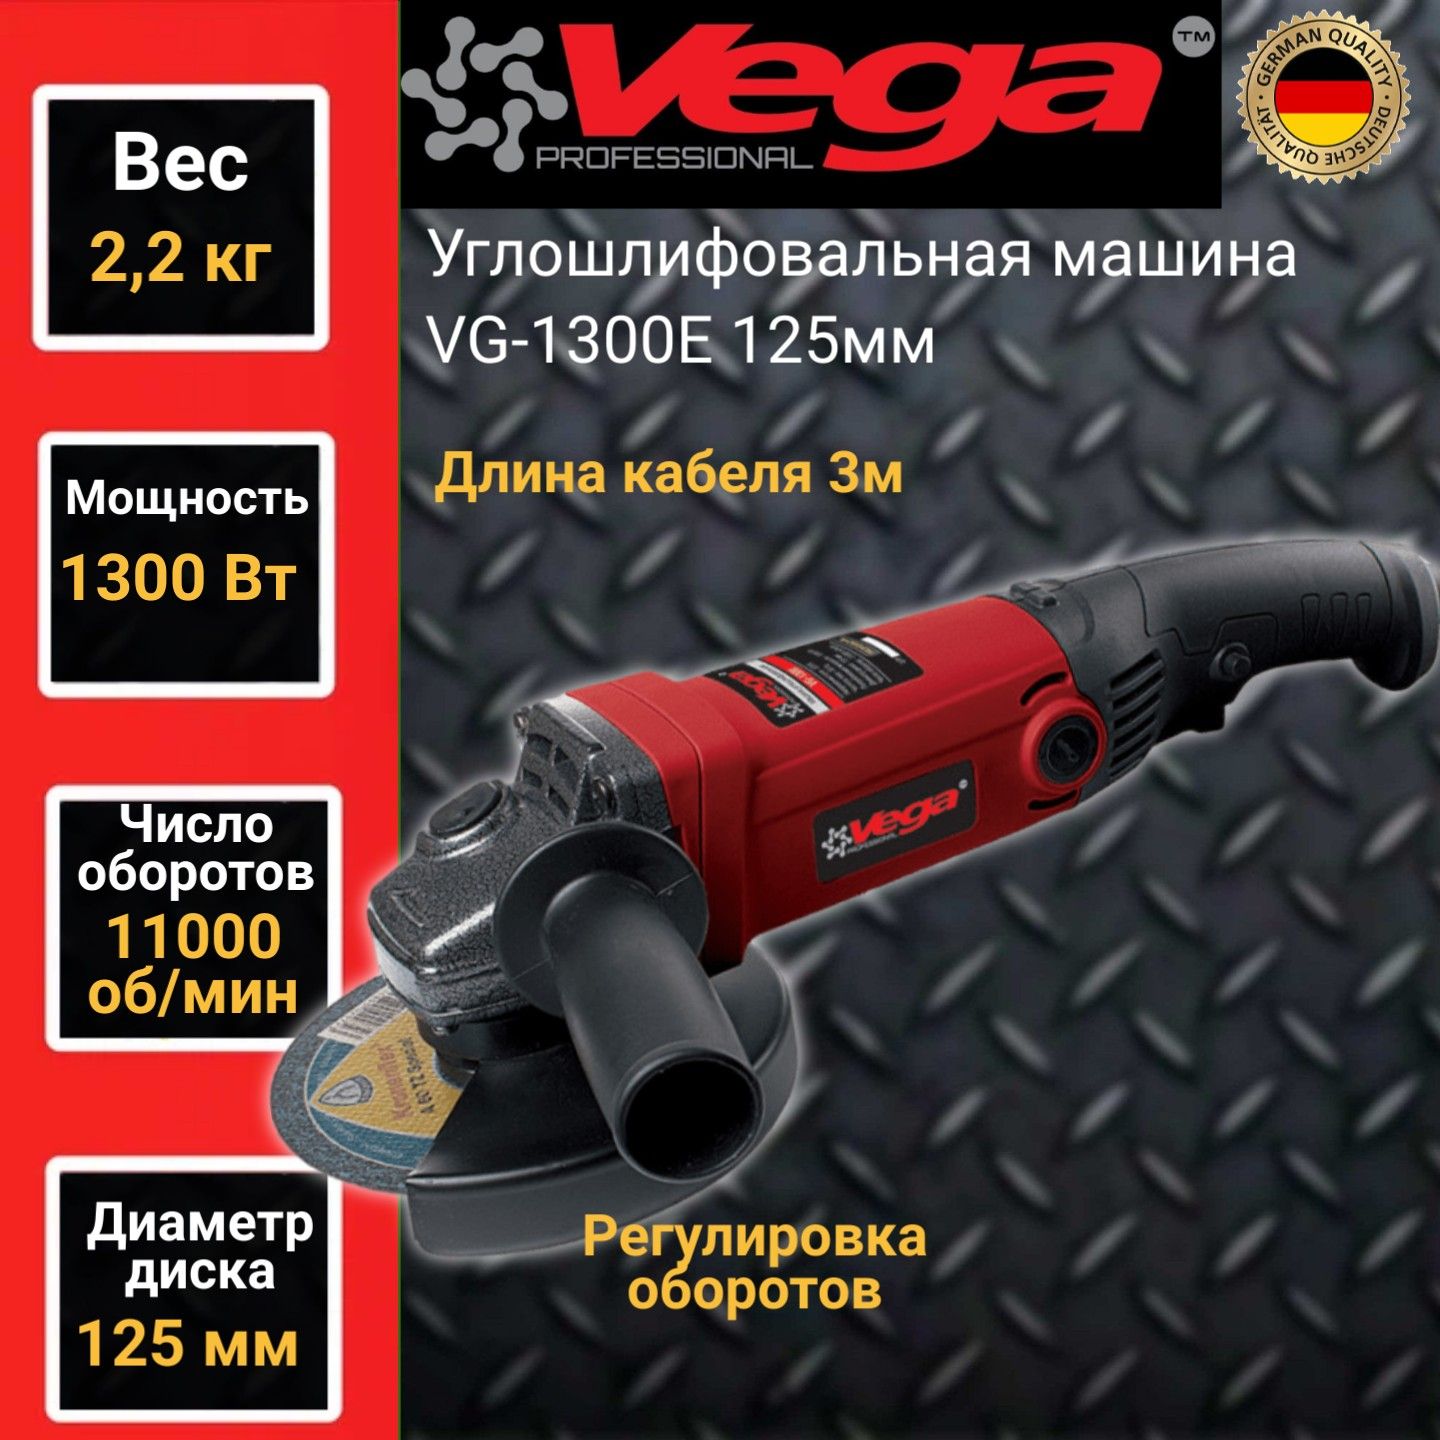 Углошлифовальная машина болгарка Vega Professional VG 1300Е, 125мм круг, 1300Вт,11000об/м конструктор 12 см пластик полицейская машина hobby kids